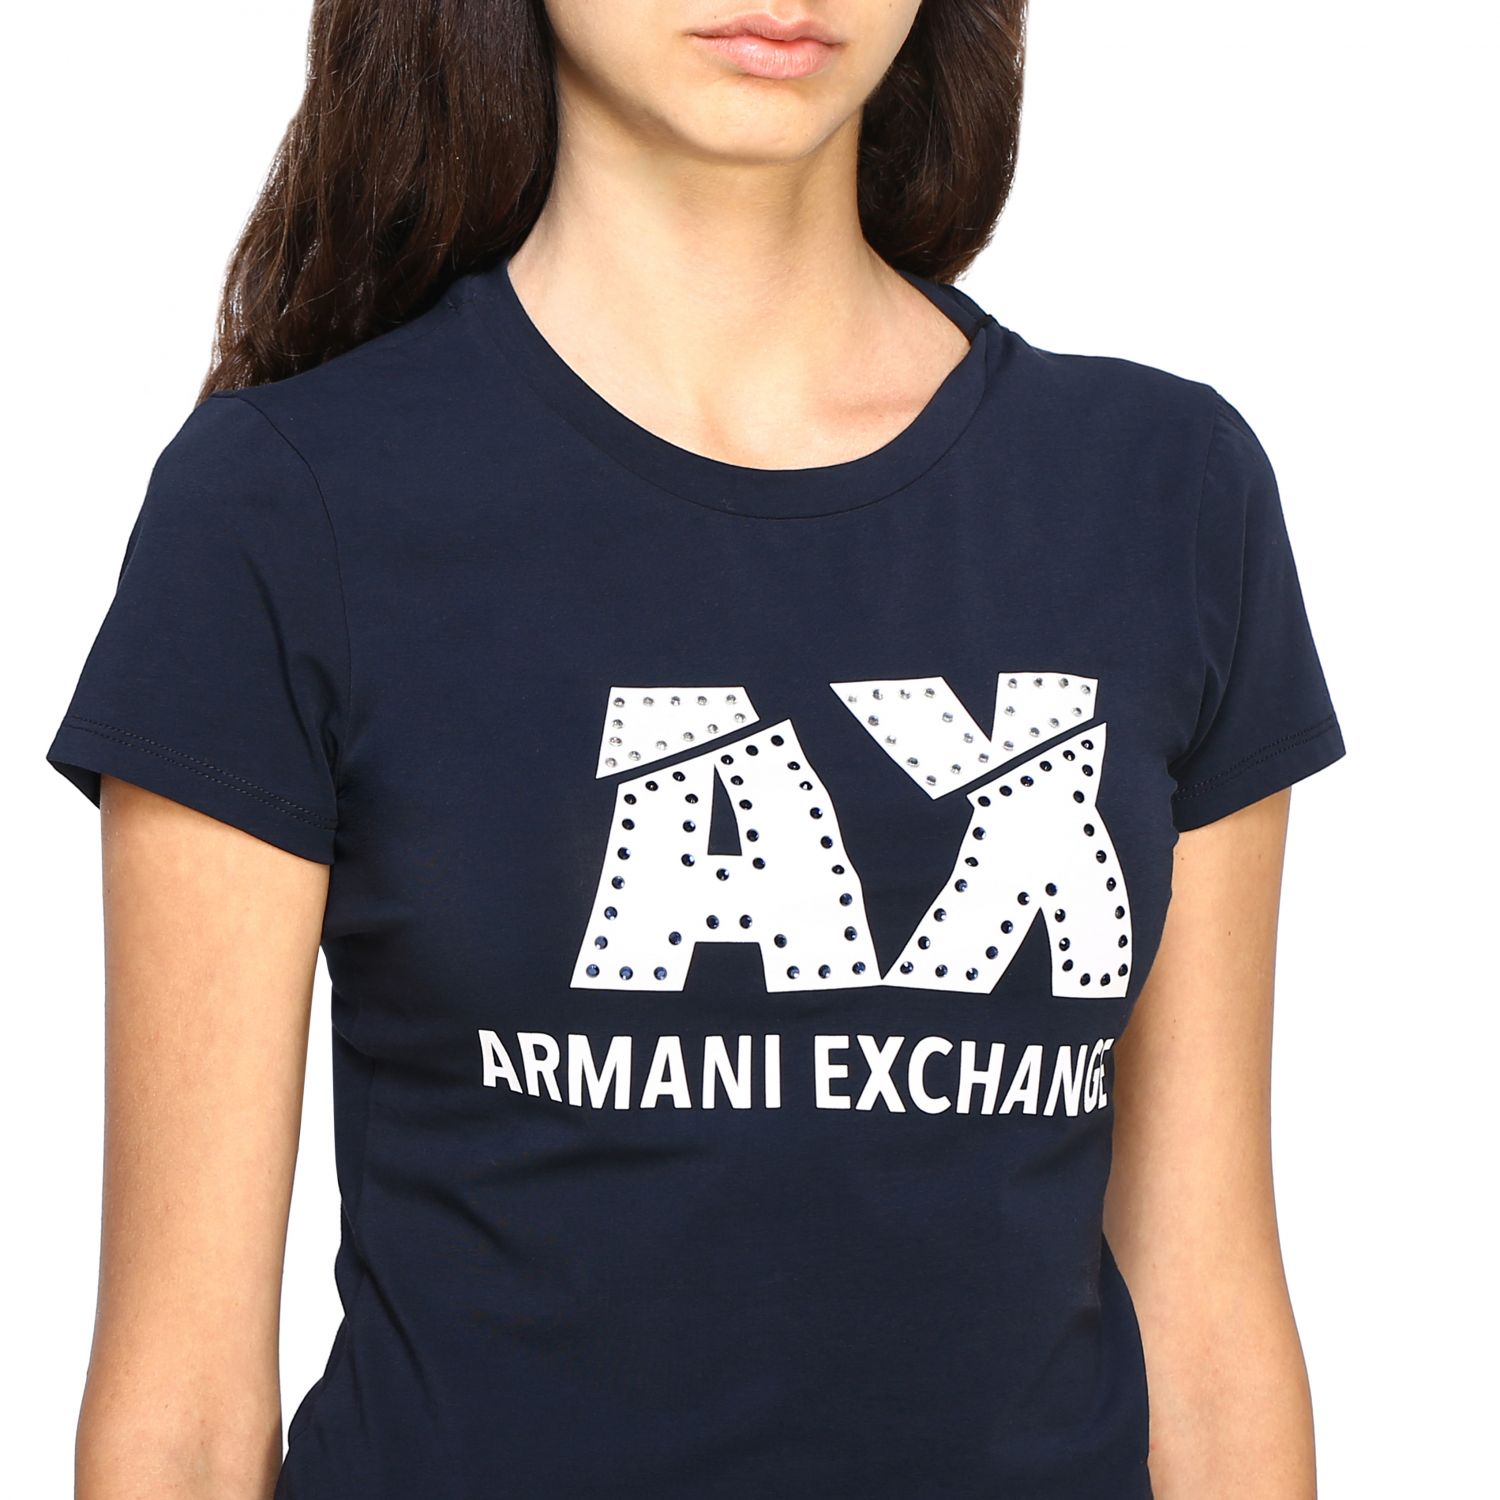 armani exchange women tops